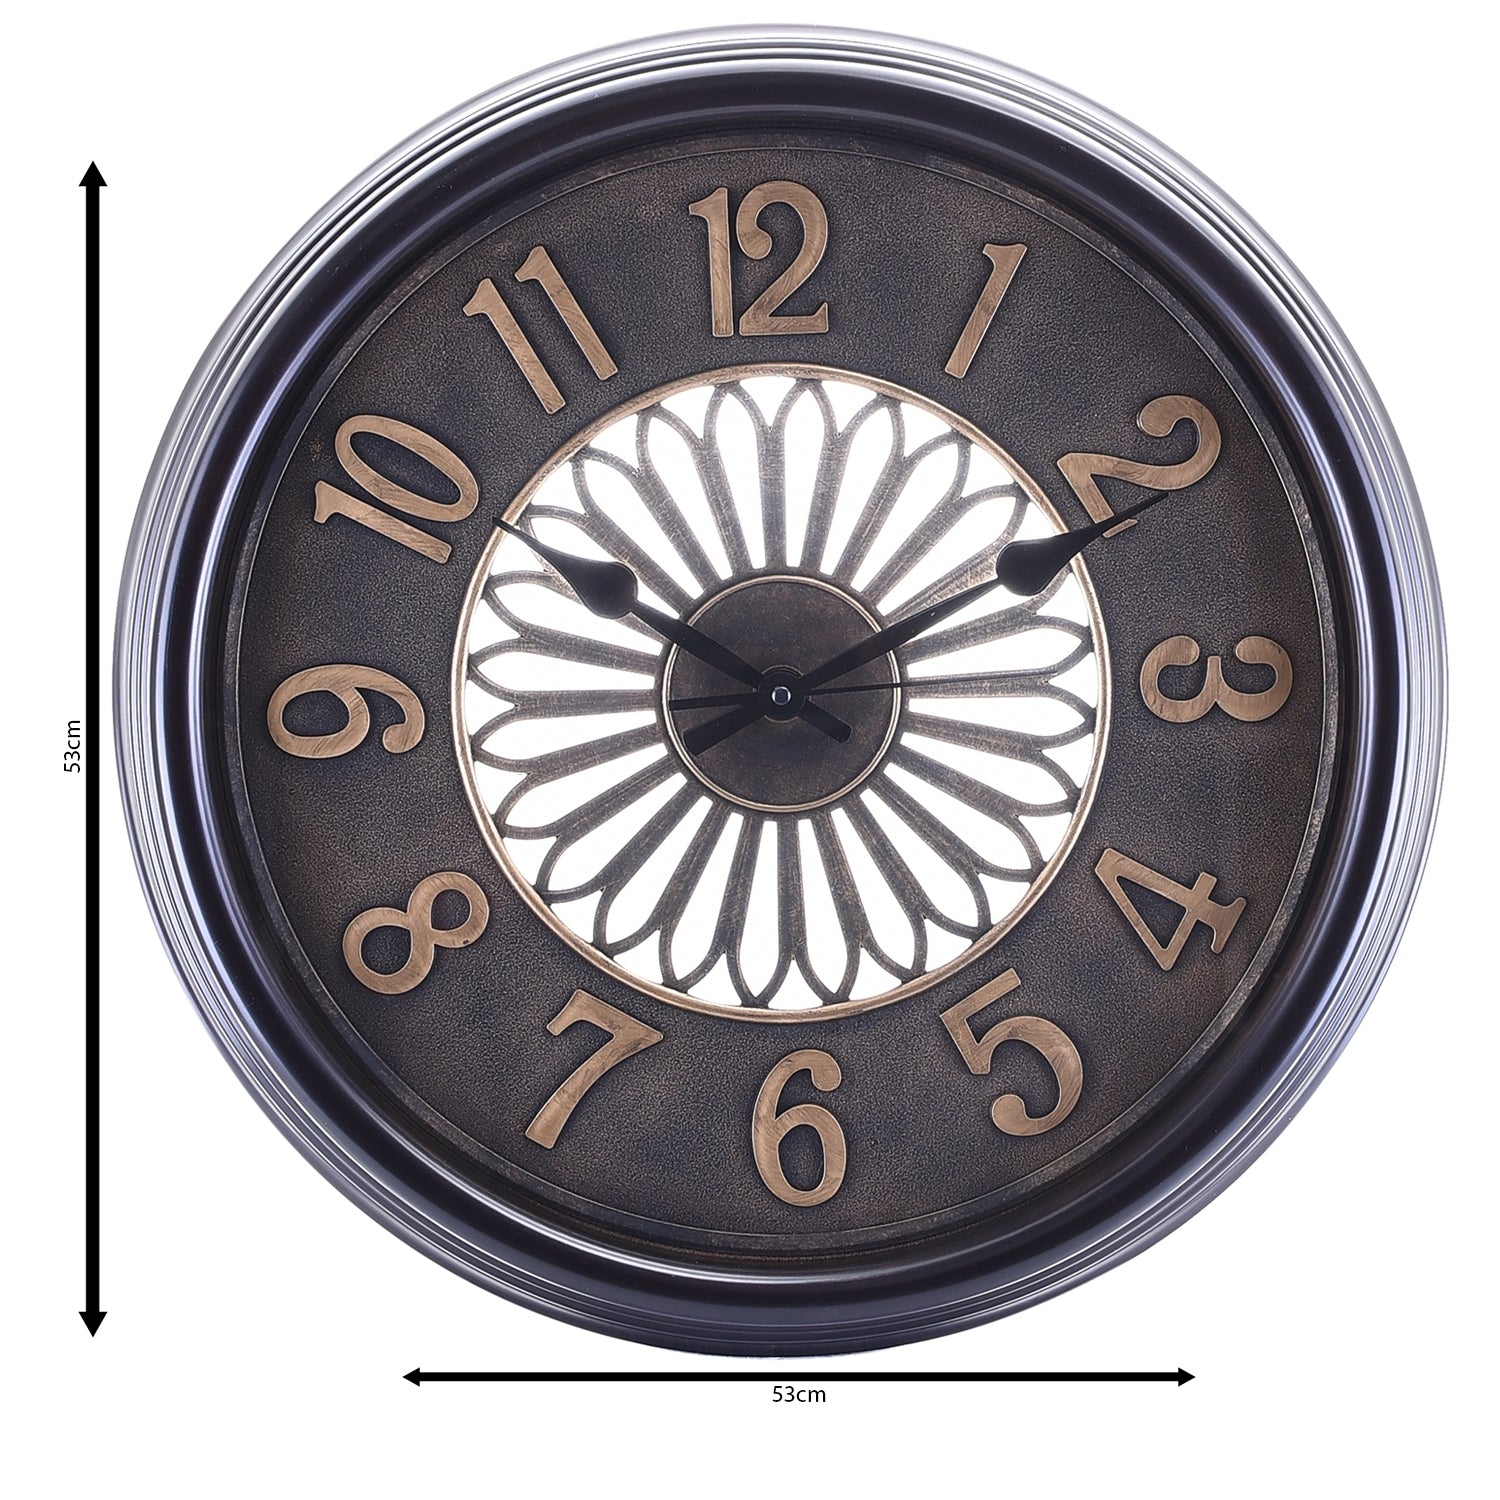 Premium Antique Design Analog Wall Clock 9